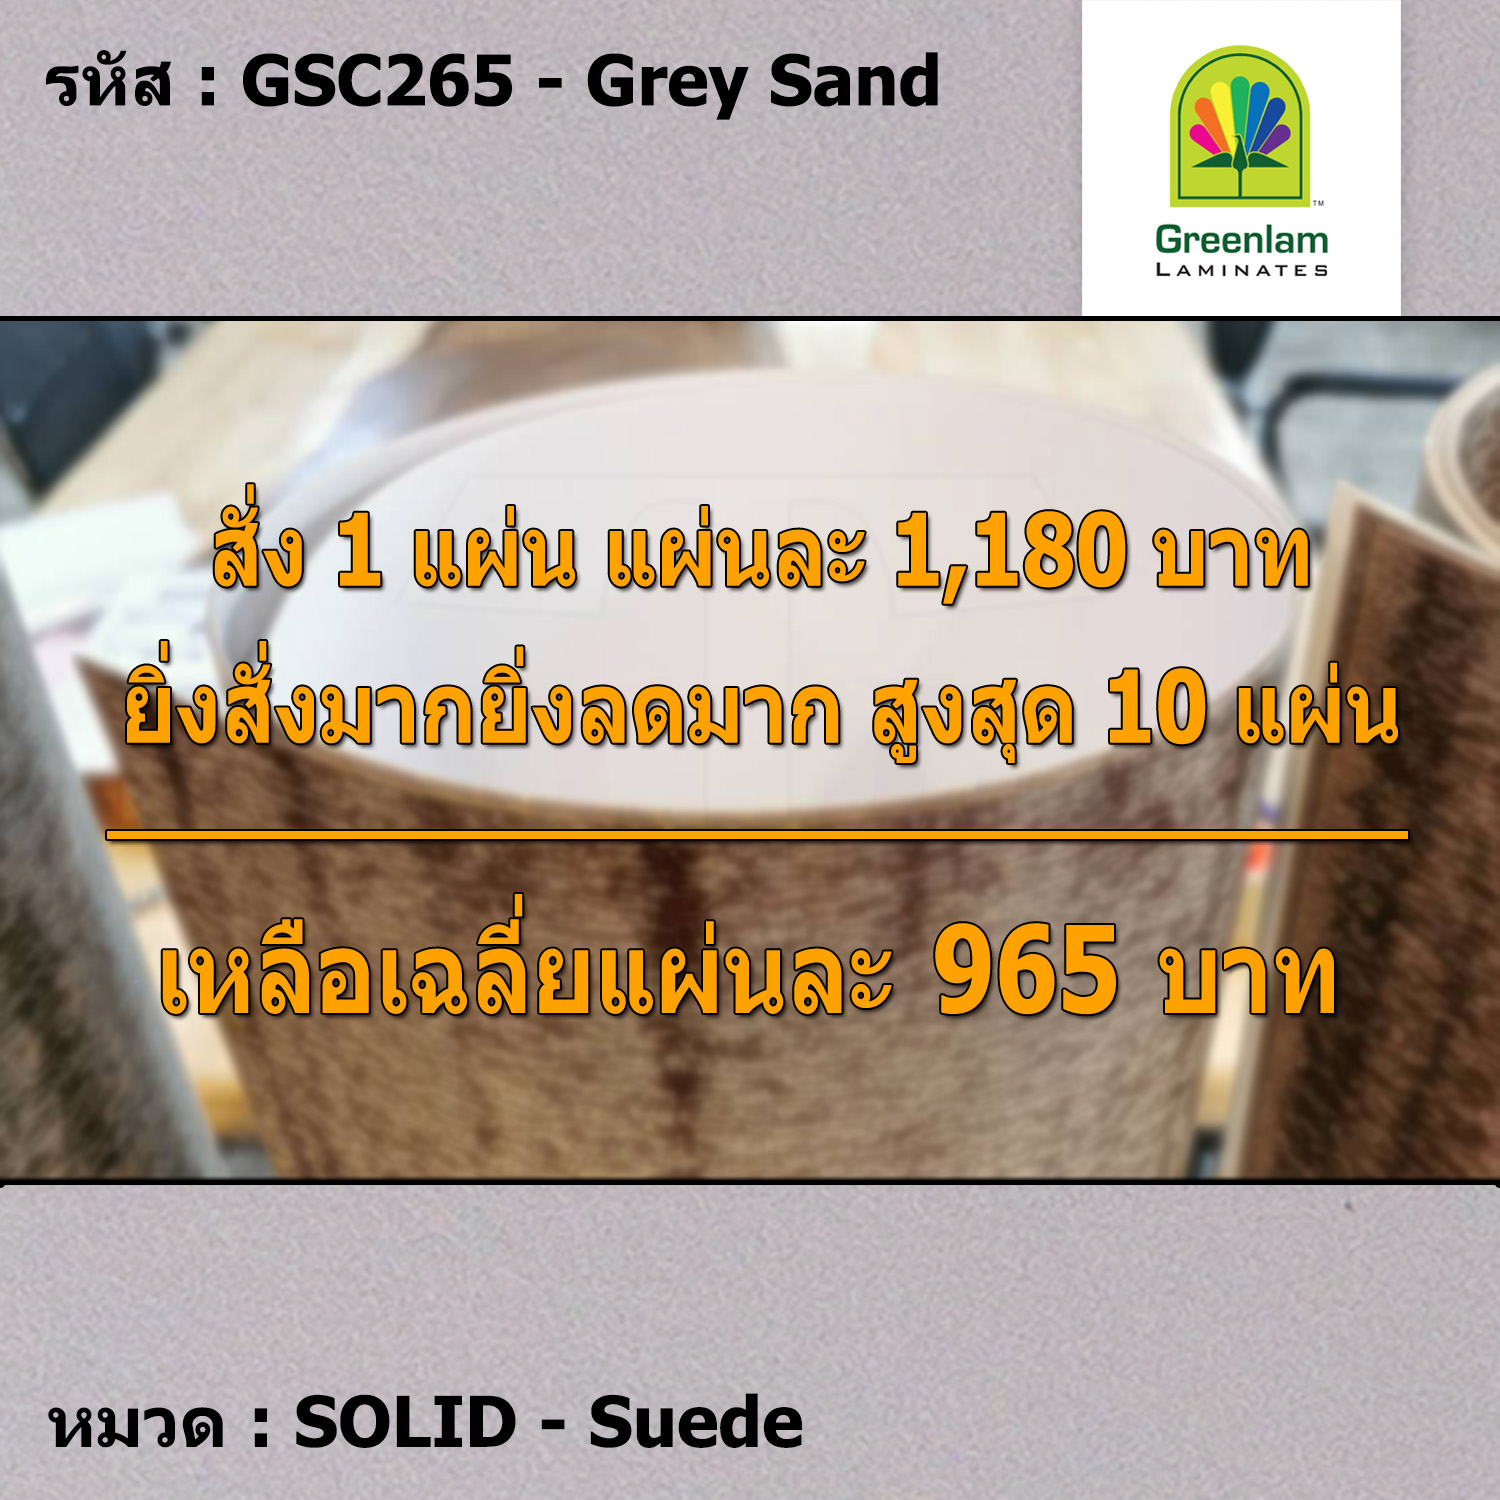 แผ่นโฟเมก้า แผ่นลามิเนต ยี่ห้อ Greenlam สีเทา รหัส GSC265 Grey Sand พื้นผิวลาย Suede ขนาด 1220 x 2440 มม. หนา 0.80 มม. ใช้สำหรับงานตกแต่งภายใน งานปิดผิวเฟอร์นิเจอร์ ผนัง และอื่นๆ เพื่อเพิ่มความสวยงาม formica laminate GSC265